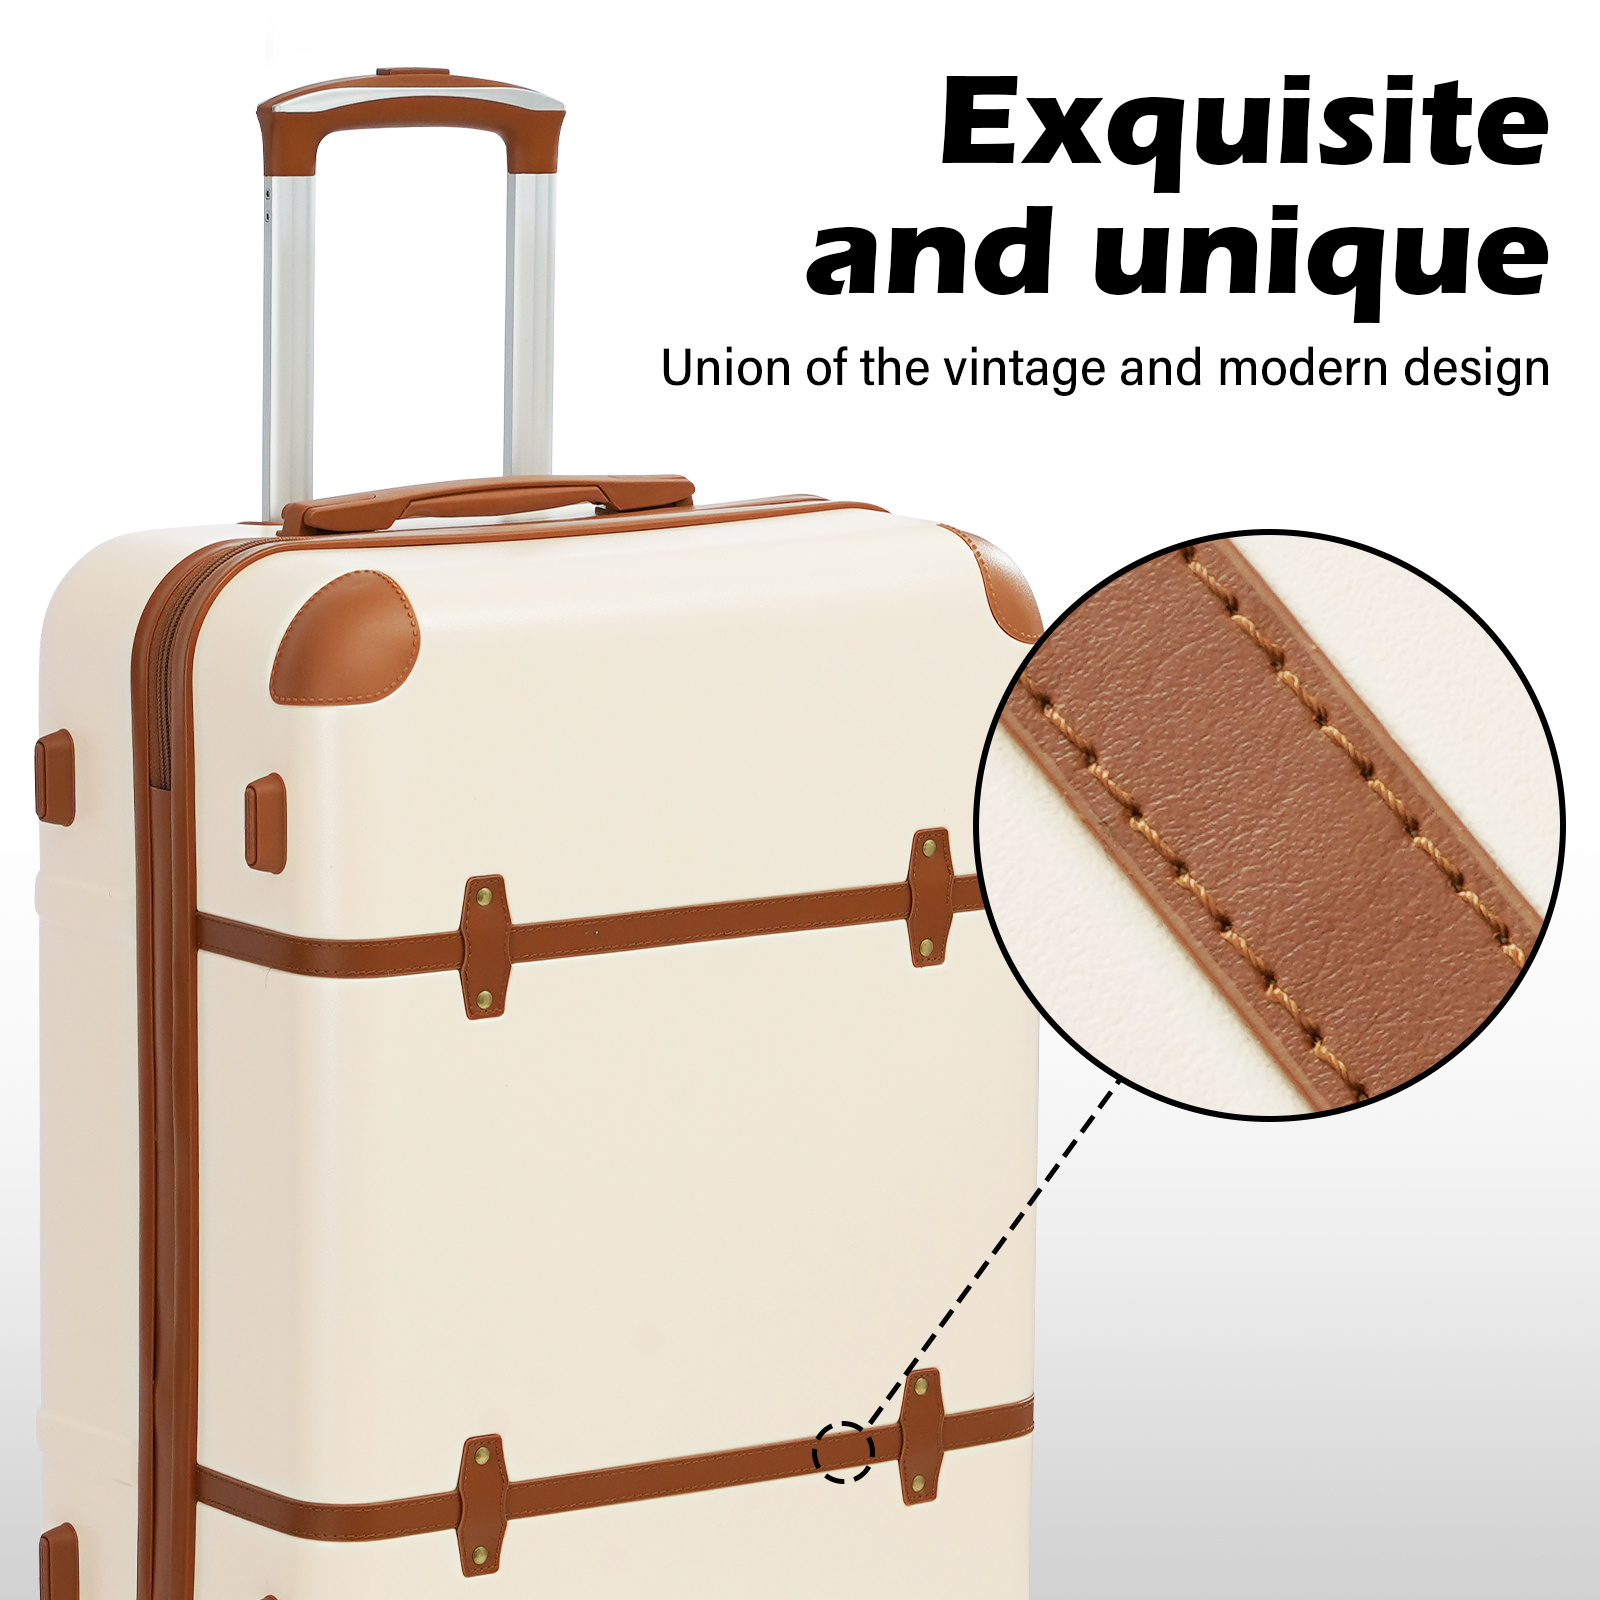 Coolife Luggage Set 3 Piece Suitcase Set Carry On Luggage PC Hardside Luggage TSA Lock Spinner Wheels Telescopic Handle